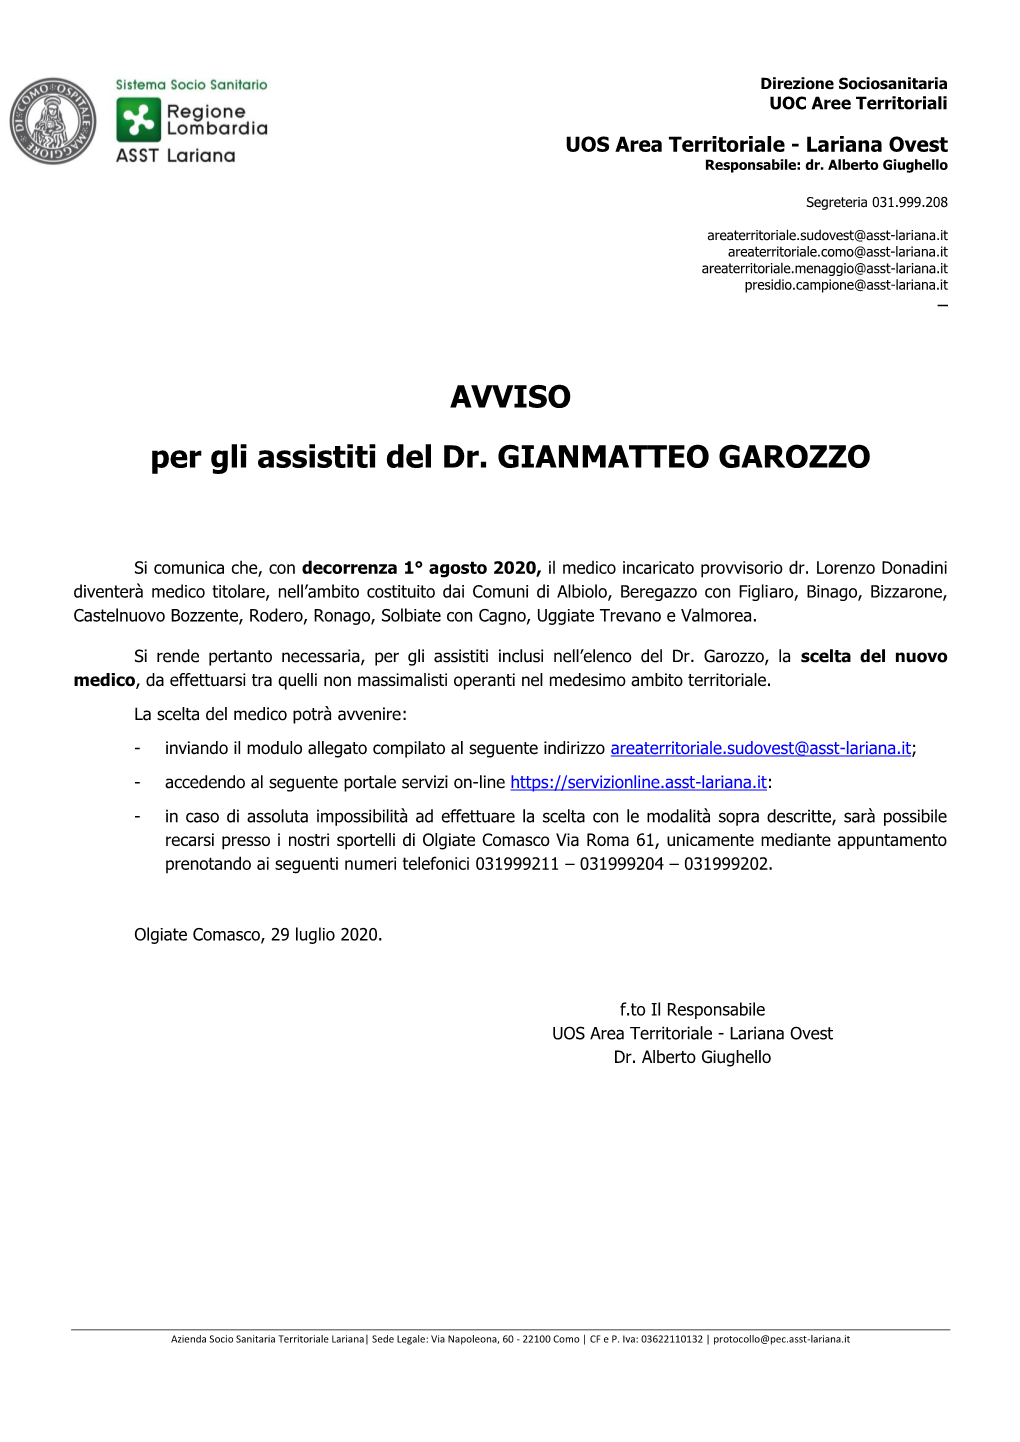 Avviso Cessazione Dr. Gianmatteo Garozzo